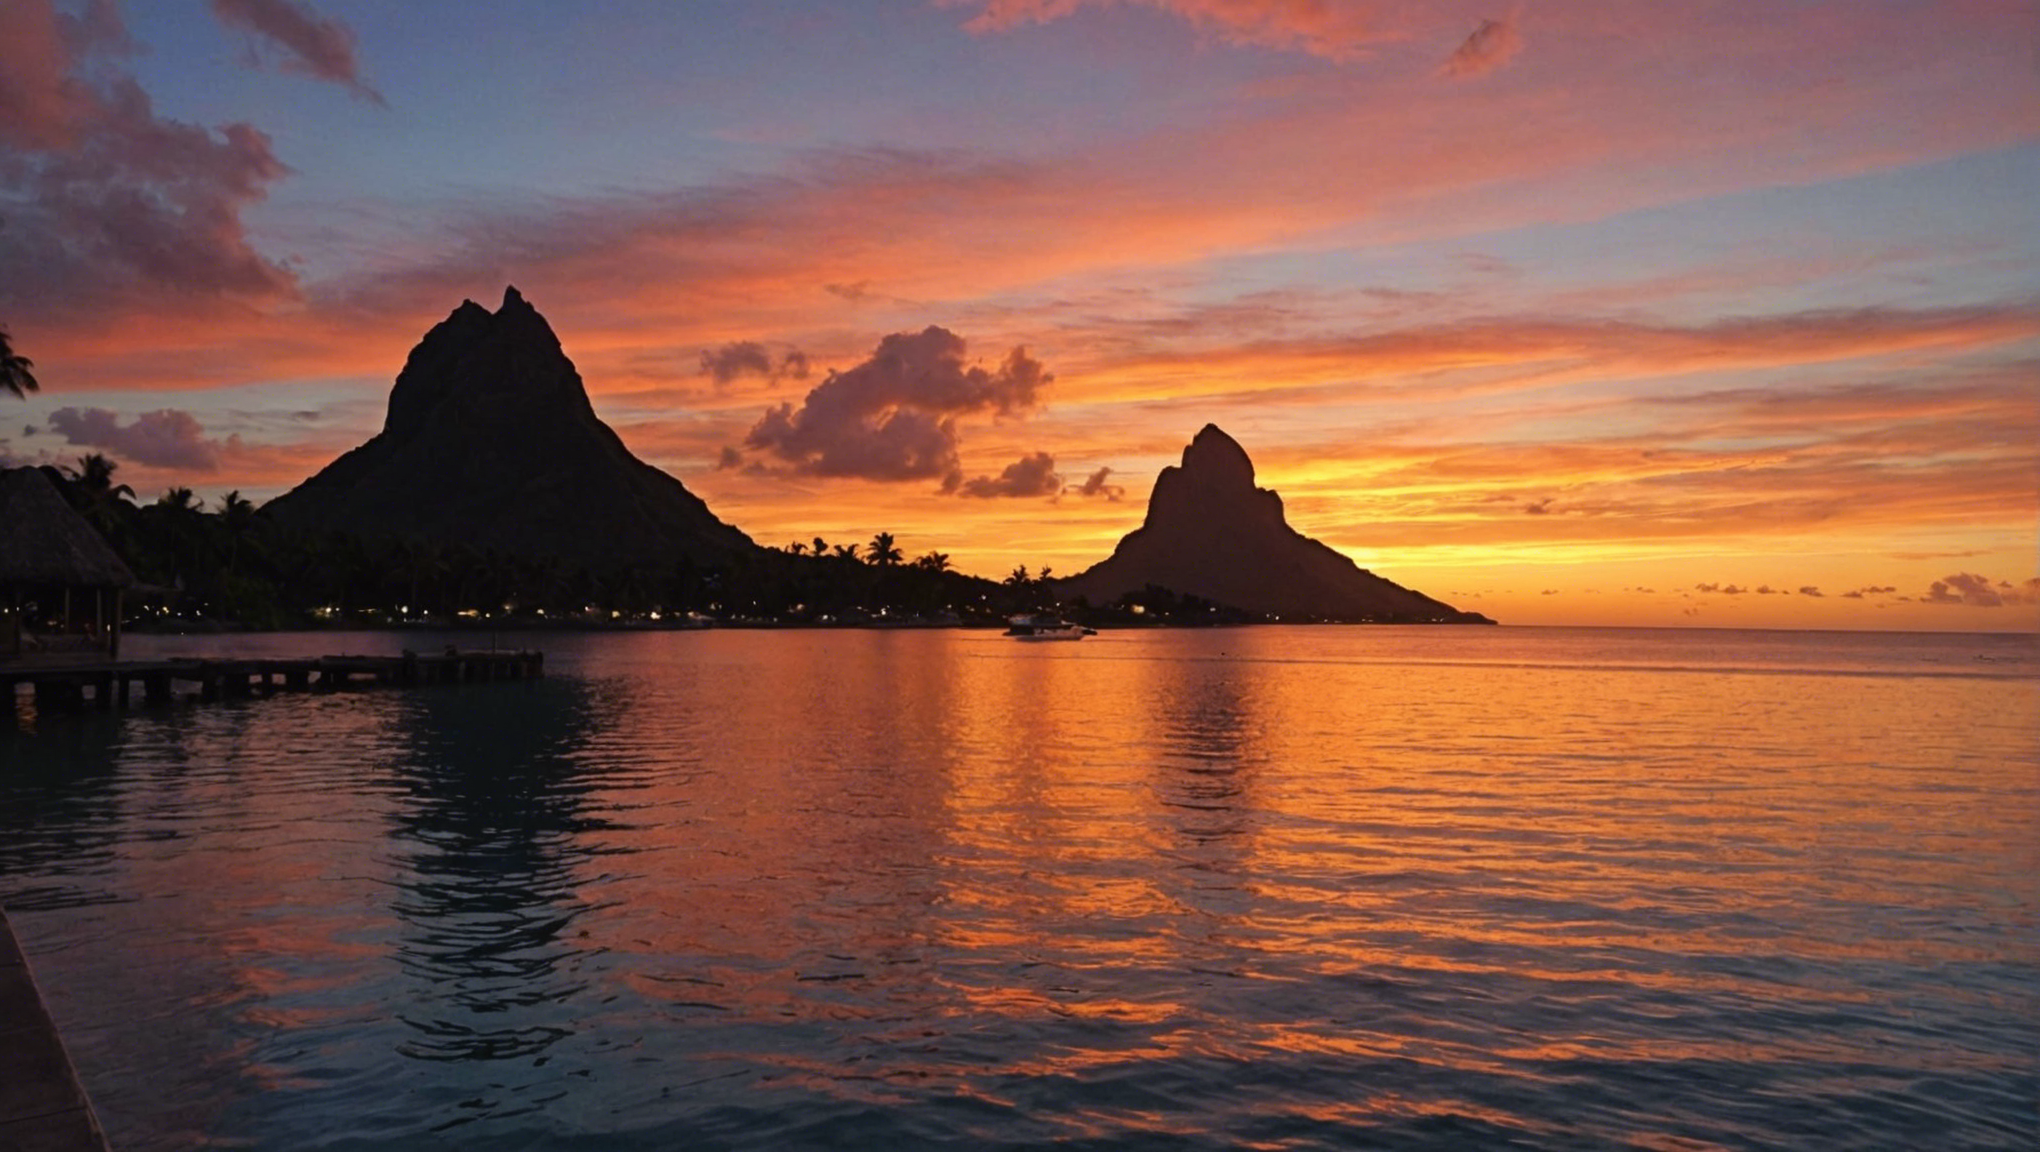 découvrez les endroits magiques à tahiti pour contempler un coucher de soleil romantique. trouvez l'endroit parfait pour une expérience inoubliable.